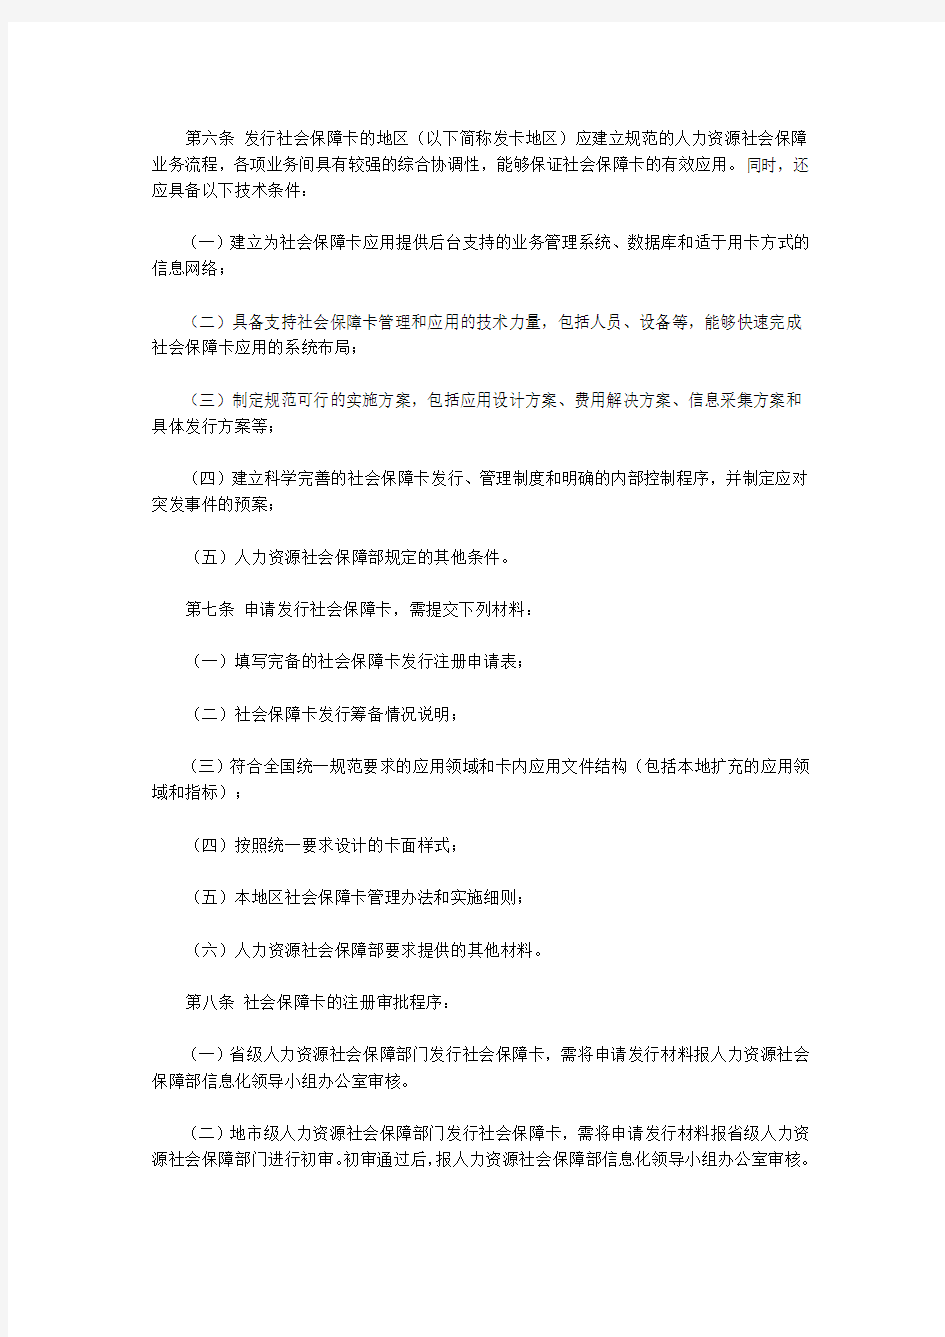 “中华人民共和国社会保障卡”管理办法的通知